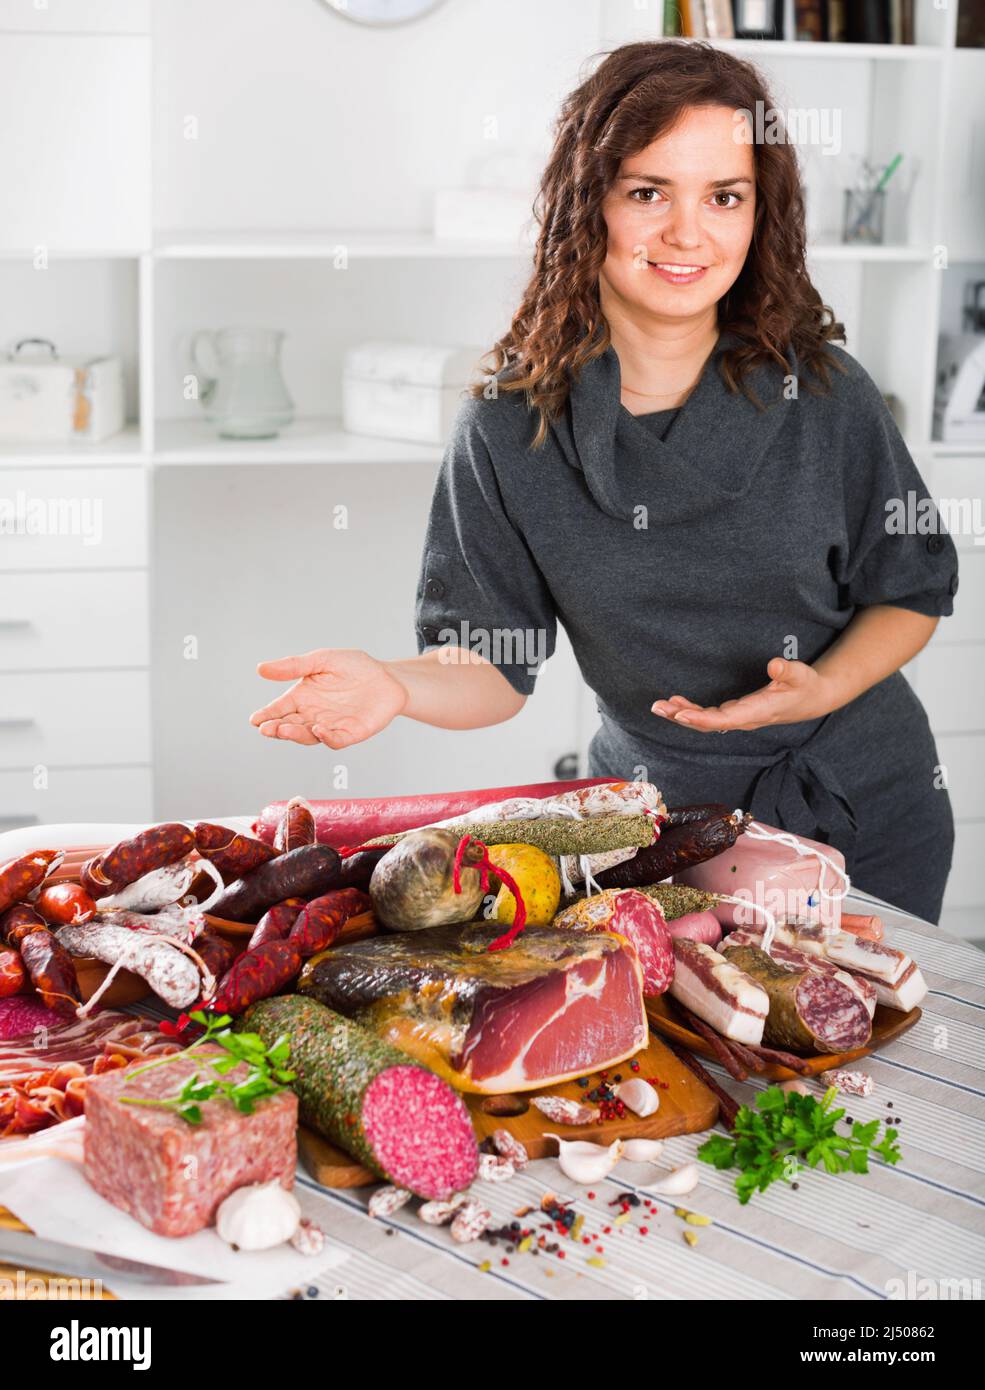 La femme coûte près de la table sur laquelle les saucisses et la viande fumée Banque D'Images